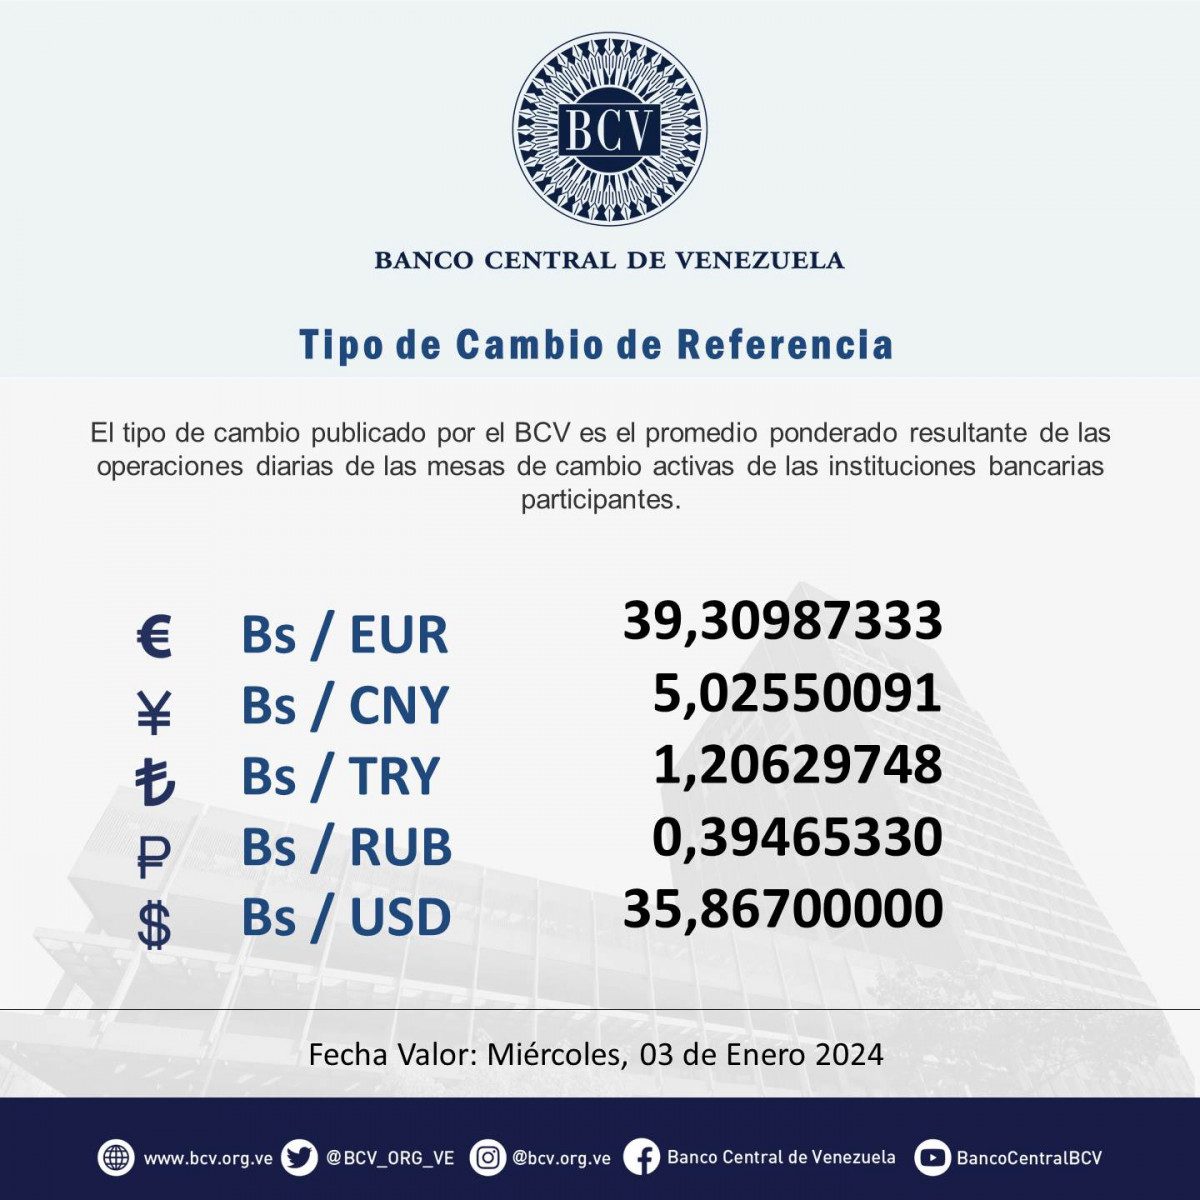 dolartoday en venezuela precio del dolar este miercoles 3 de enero de 2024 laverdaddemonagas.com bcv1223